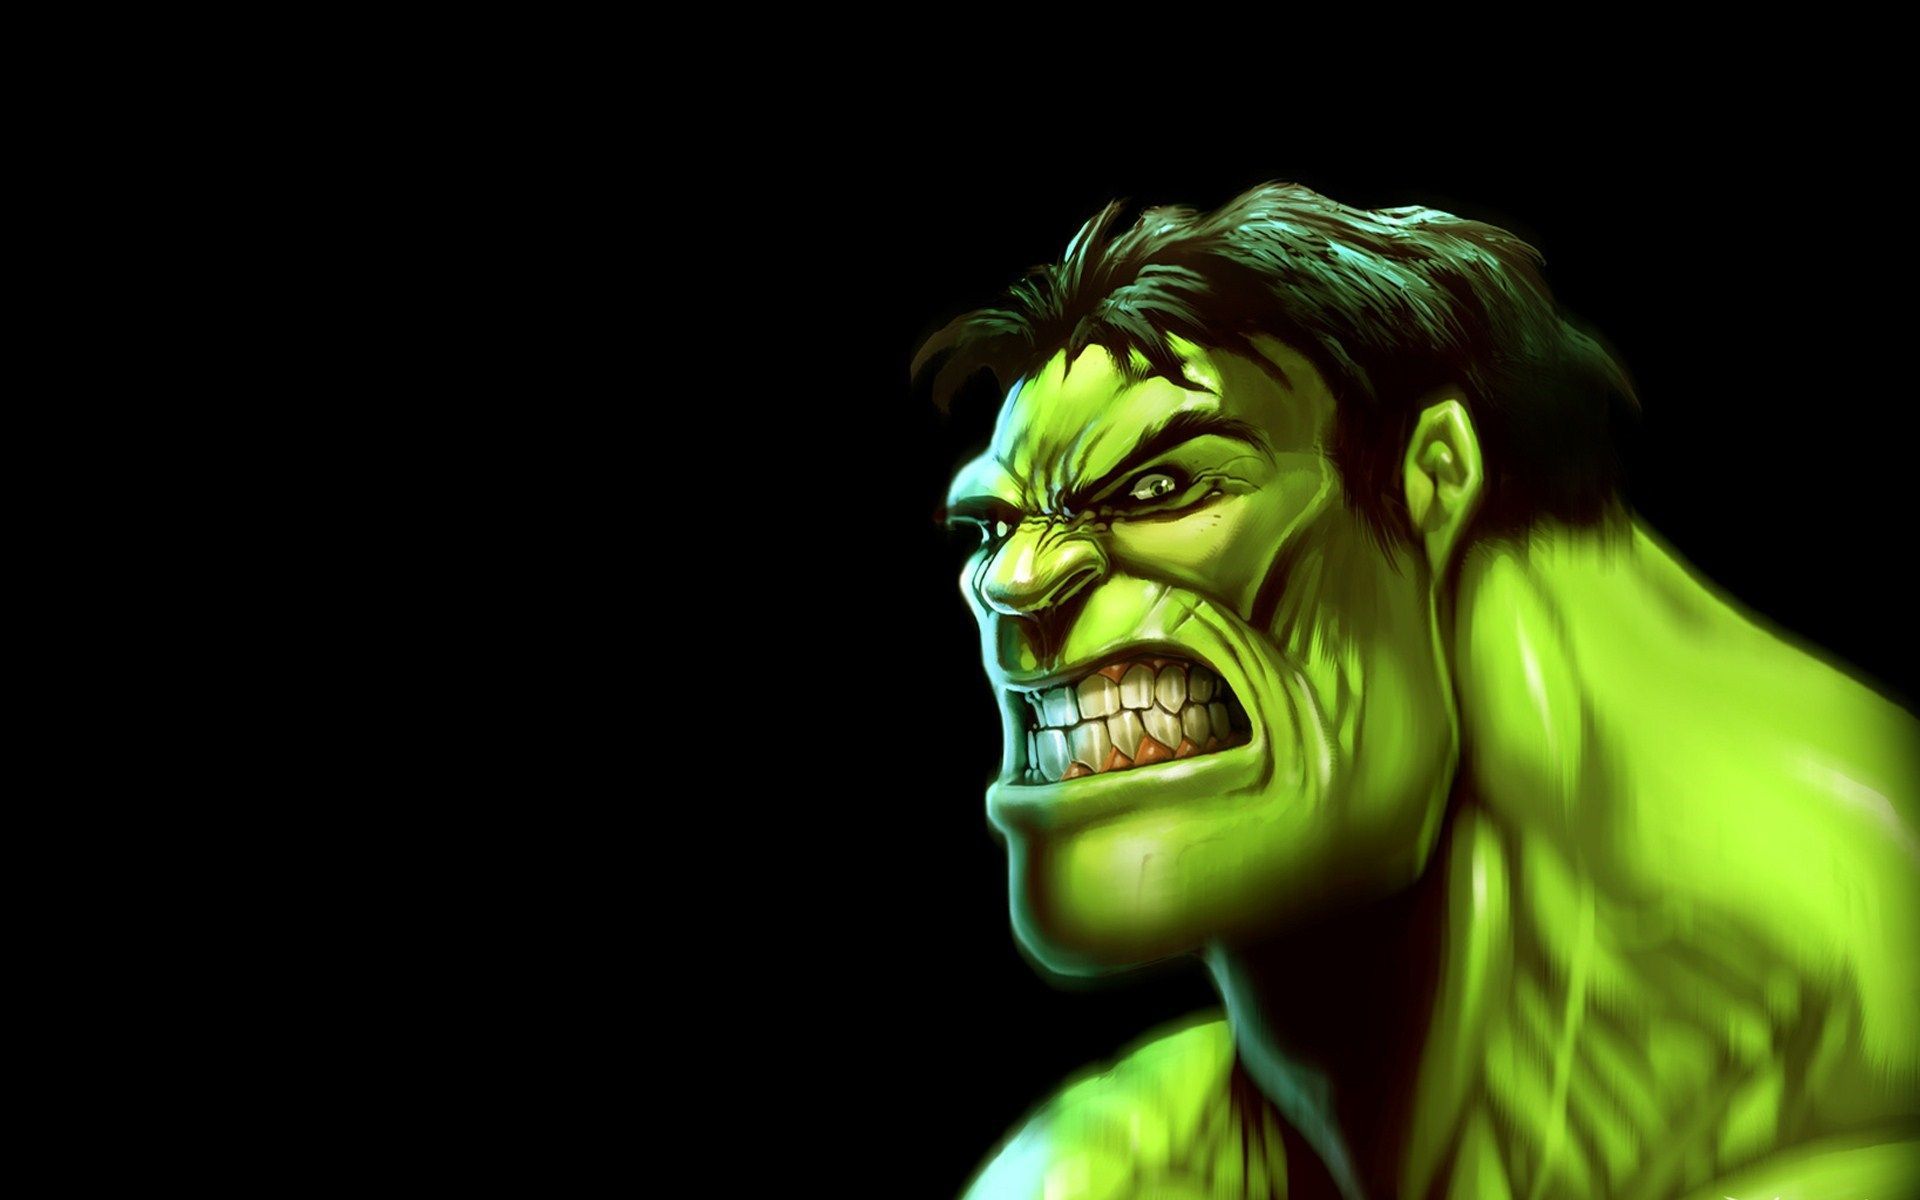 Hulk cartoon : Ảnh và hình ảnh | Shutterstock